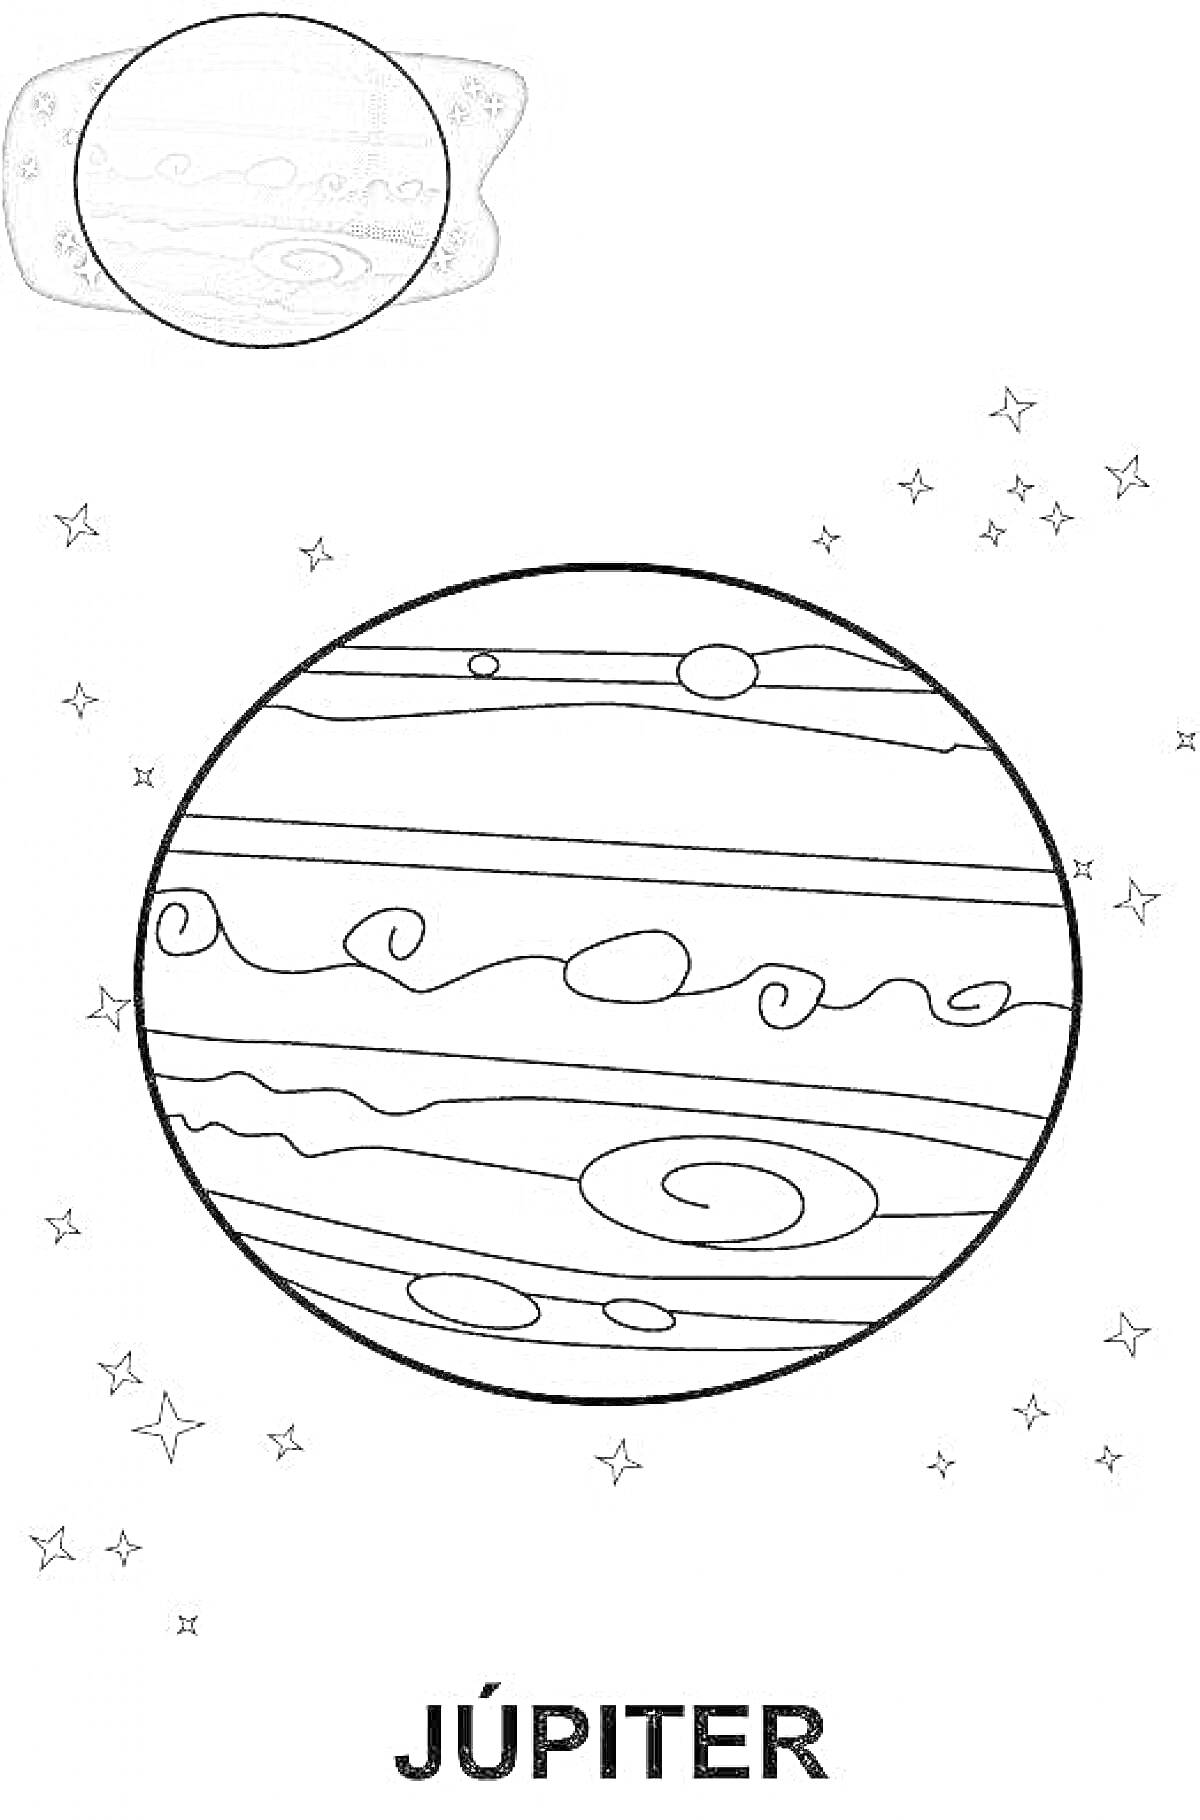 Раскраска Планета Юпитер с небольшими звездами вокруг